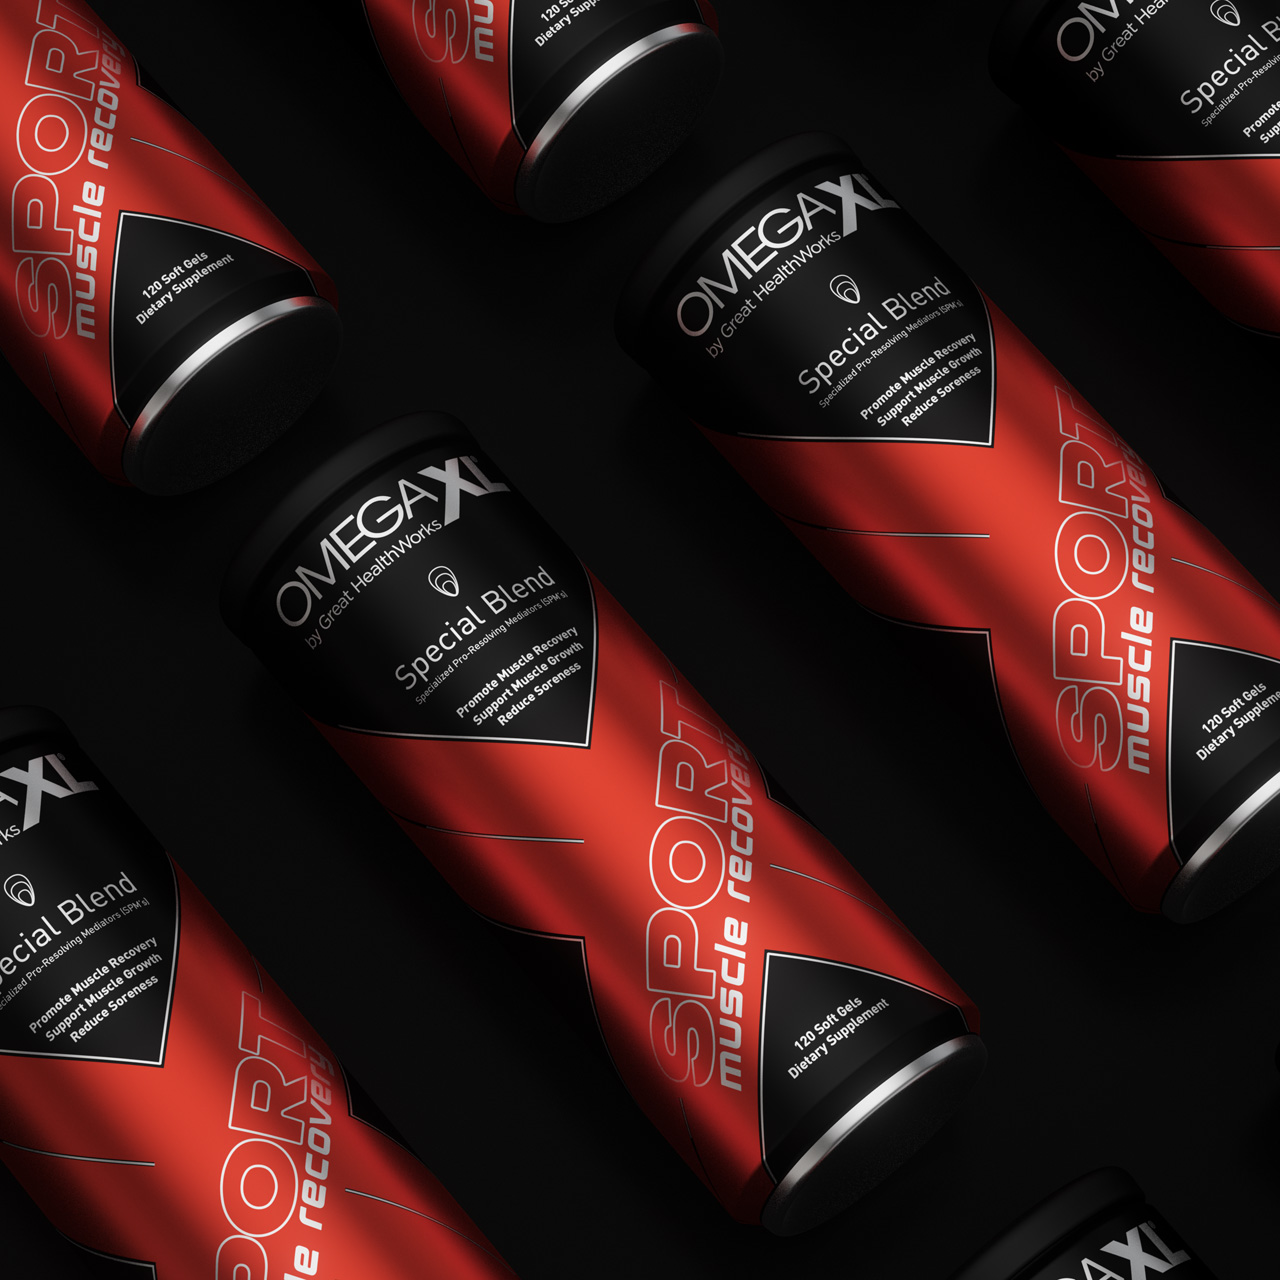 OmegaXL Sport<br>Packaging Design & Brand Development